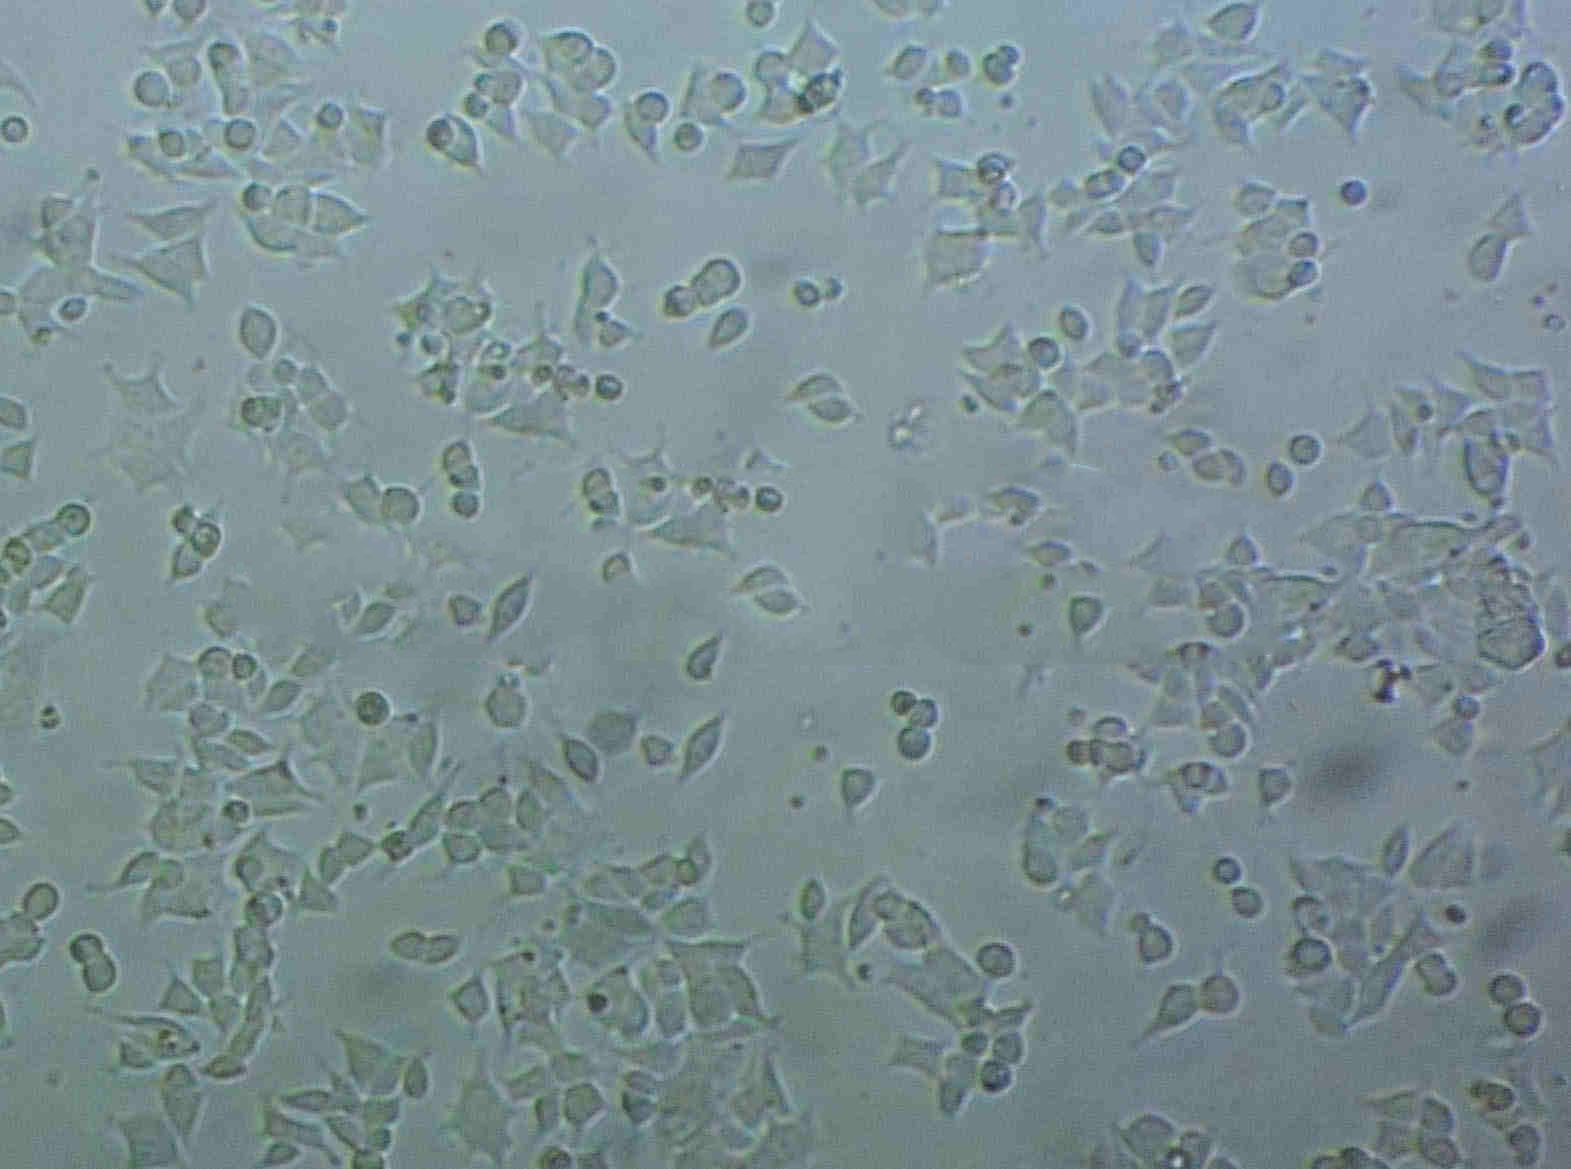 NRCC Cell|人肾透明细胞癌细胞,NRCC Cell